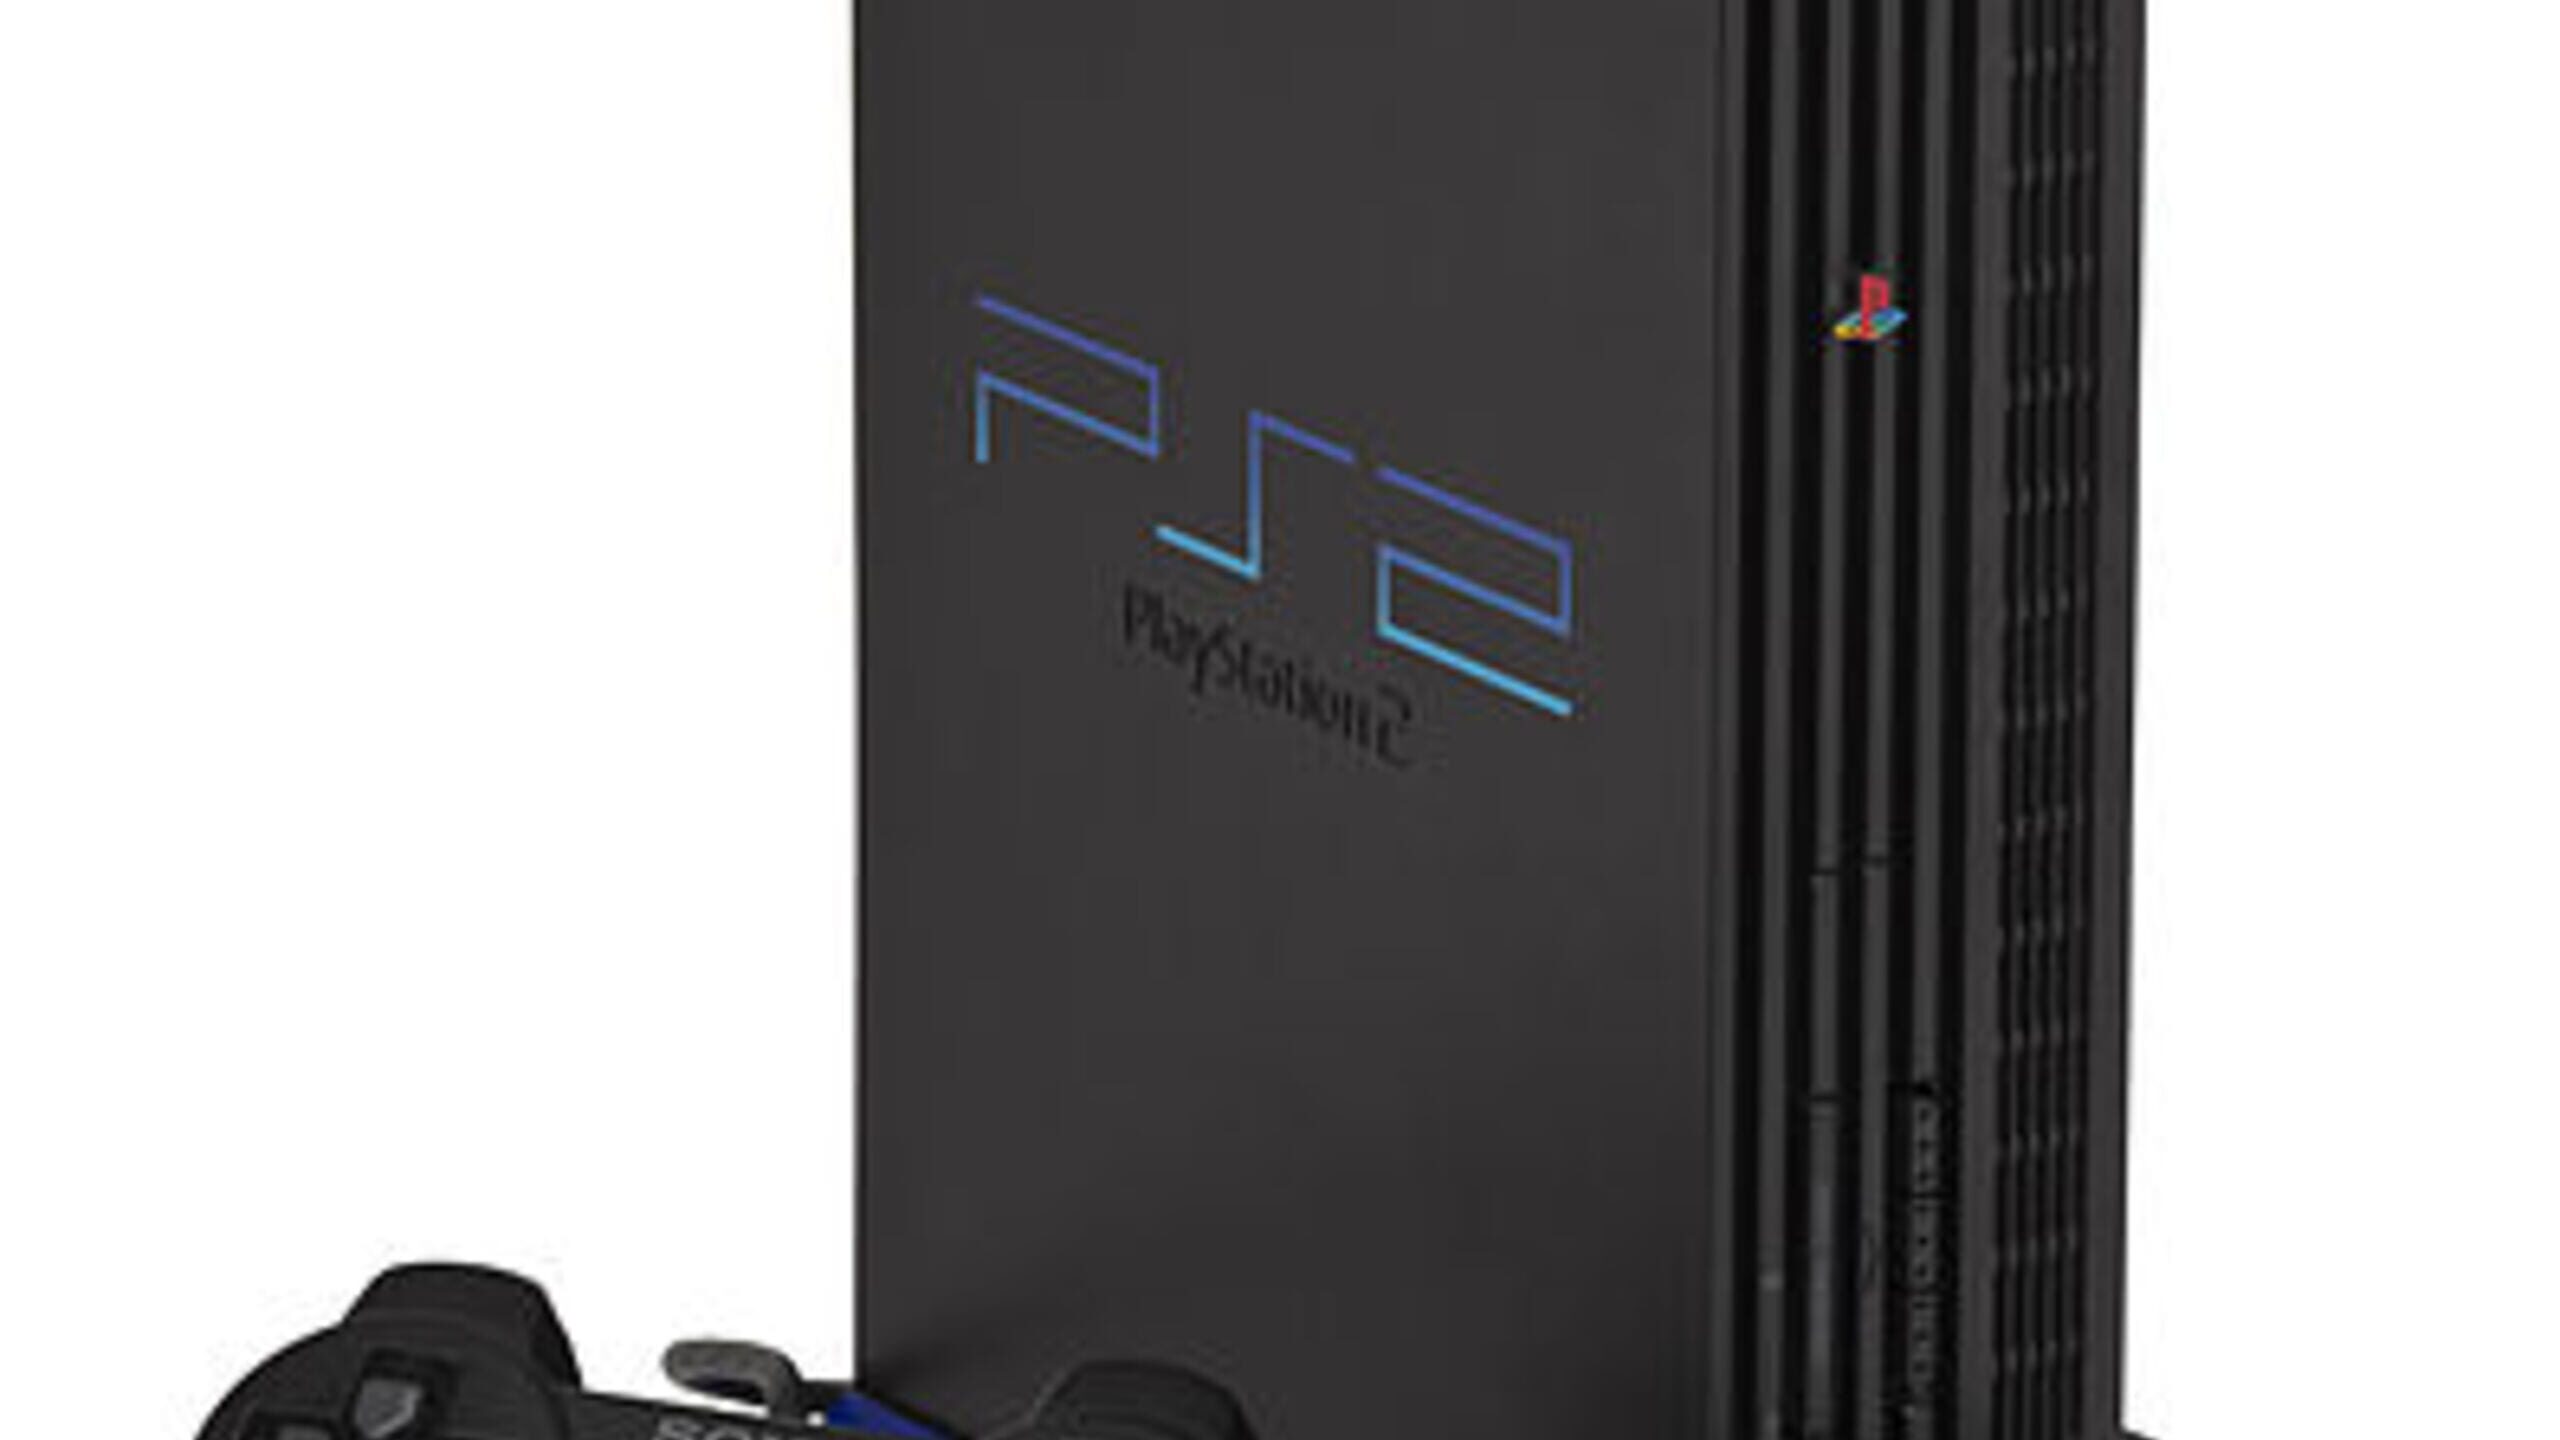 PS2 modem games 